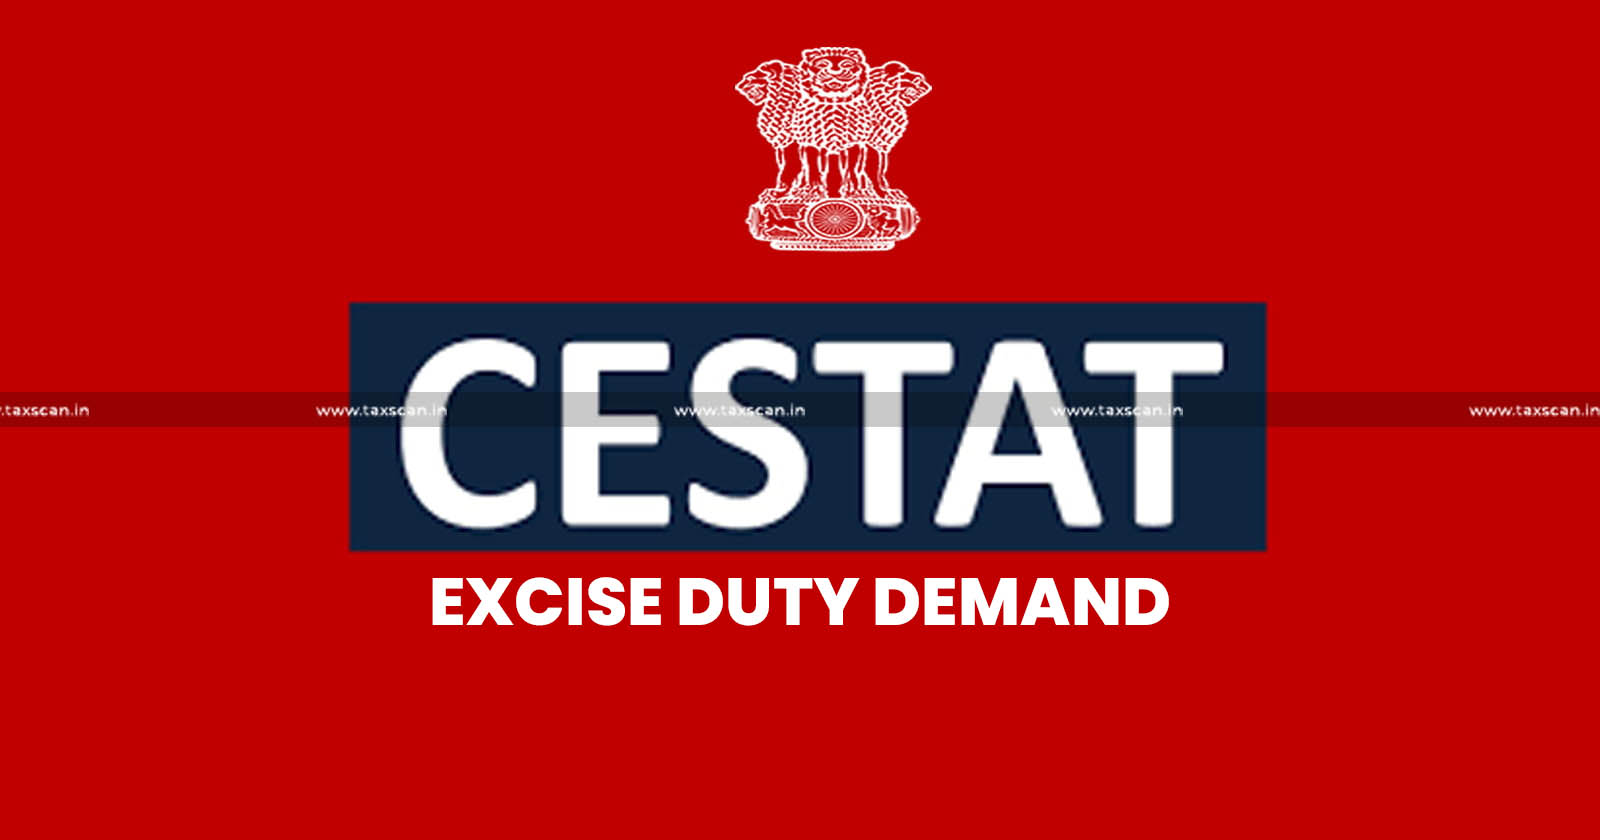 Excise Duty demand - CESTAT - Clandestine Production Vague - TAXSCAN